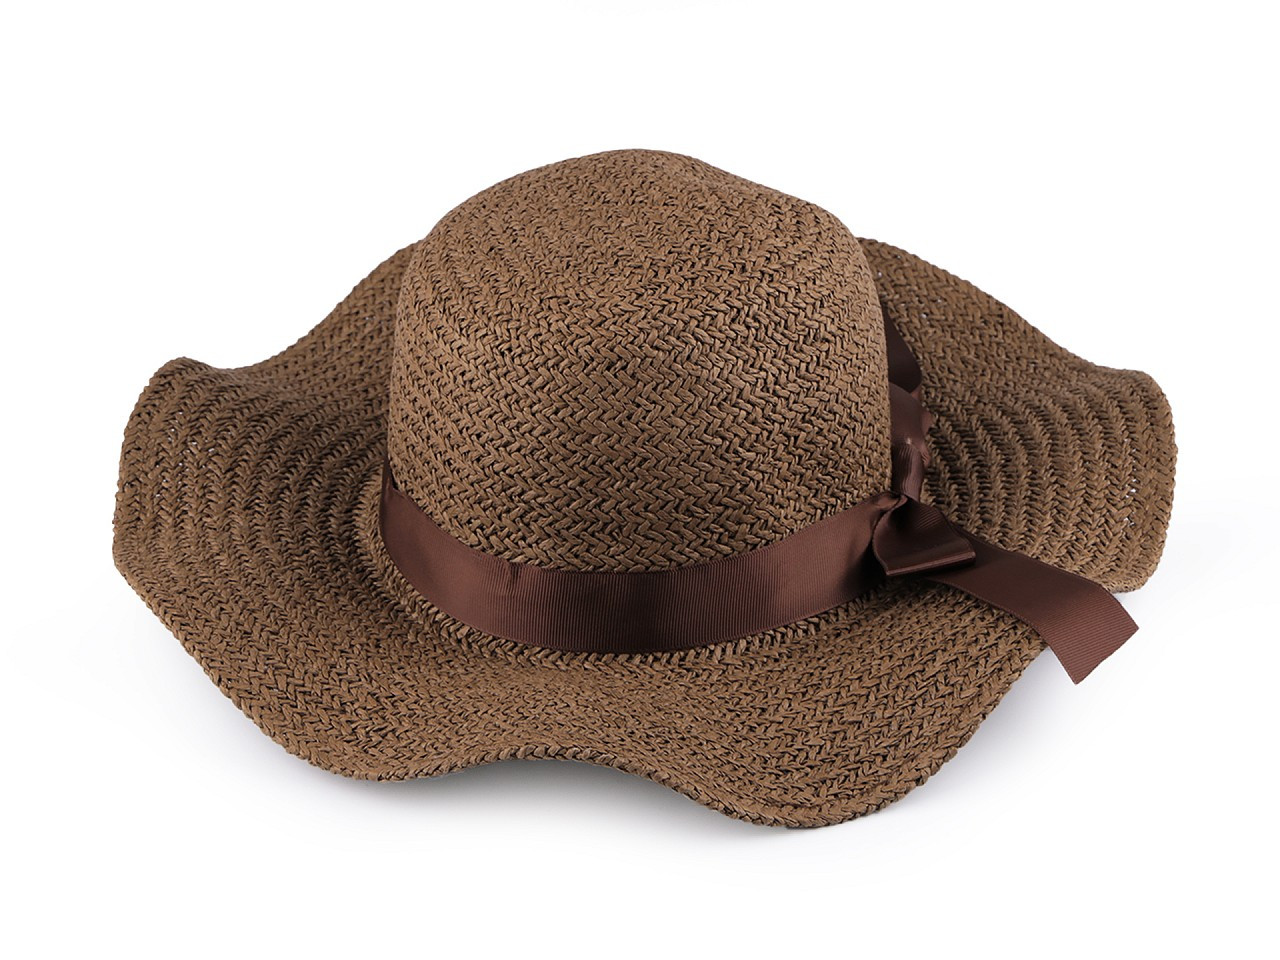 Dámský letní klobouk / slamák, barva 3 hnědá světlá